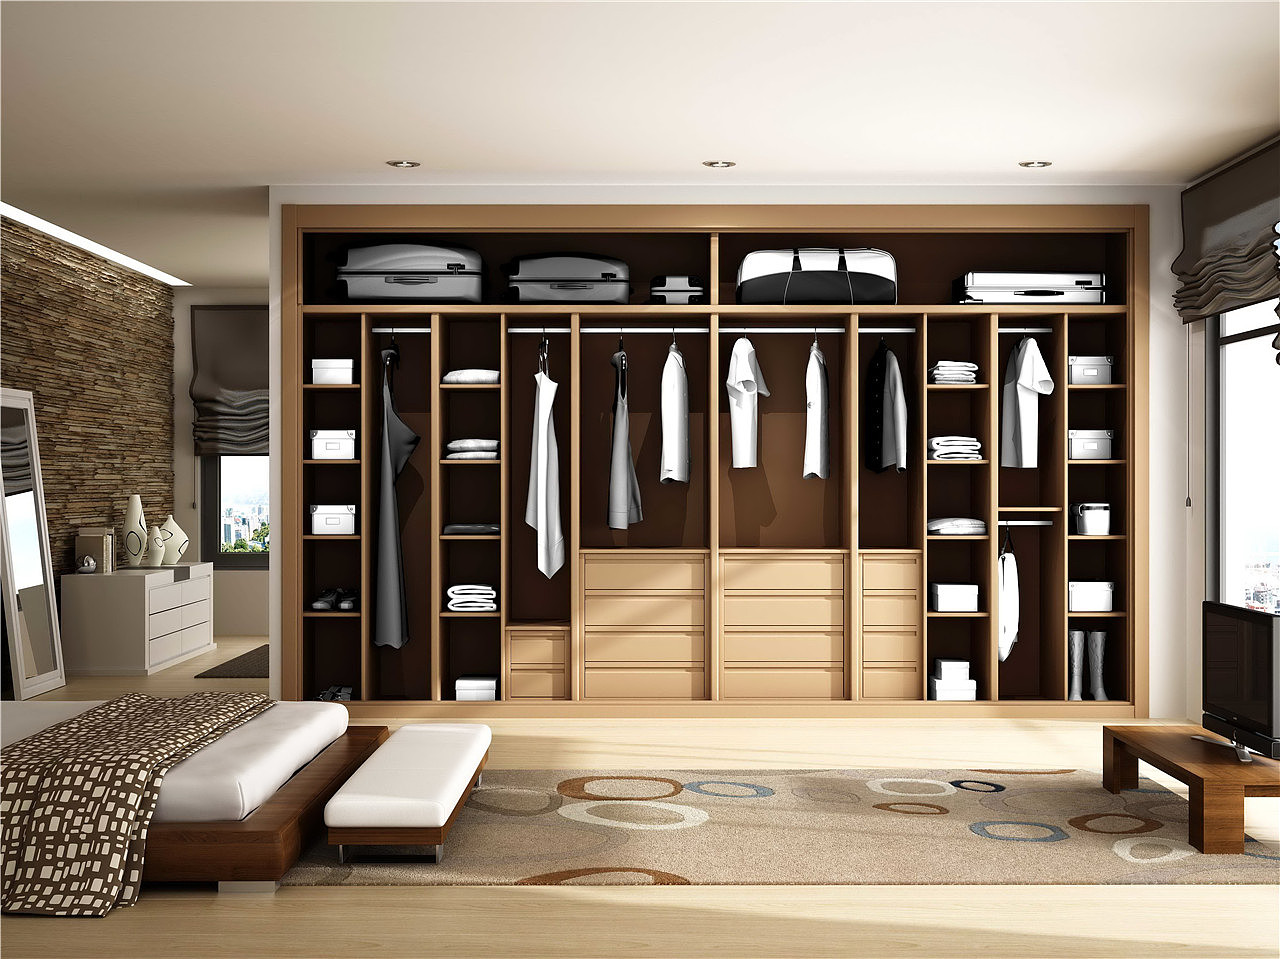 中式风格卧室原木色衣柜装修设计图- 中国风